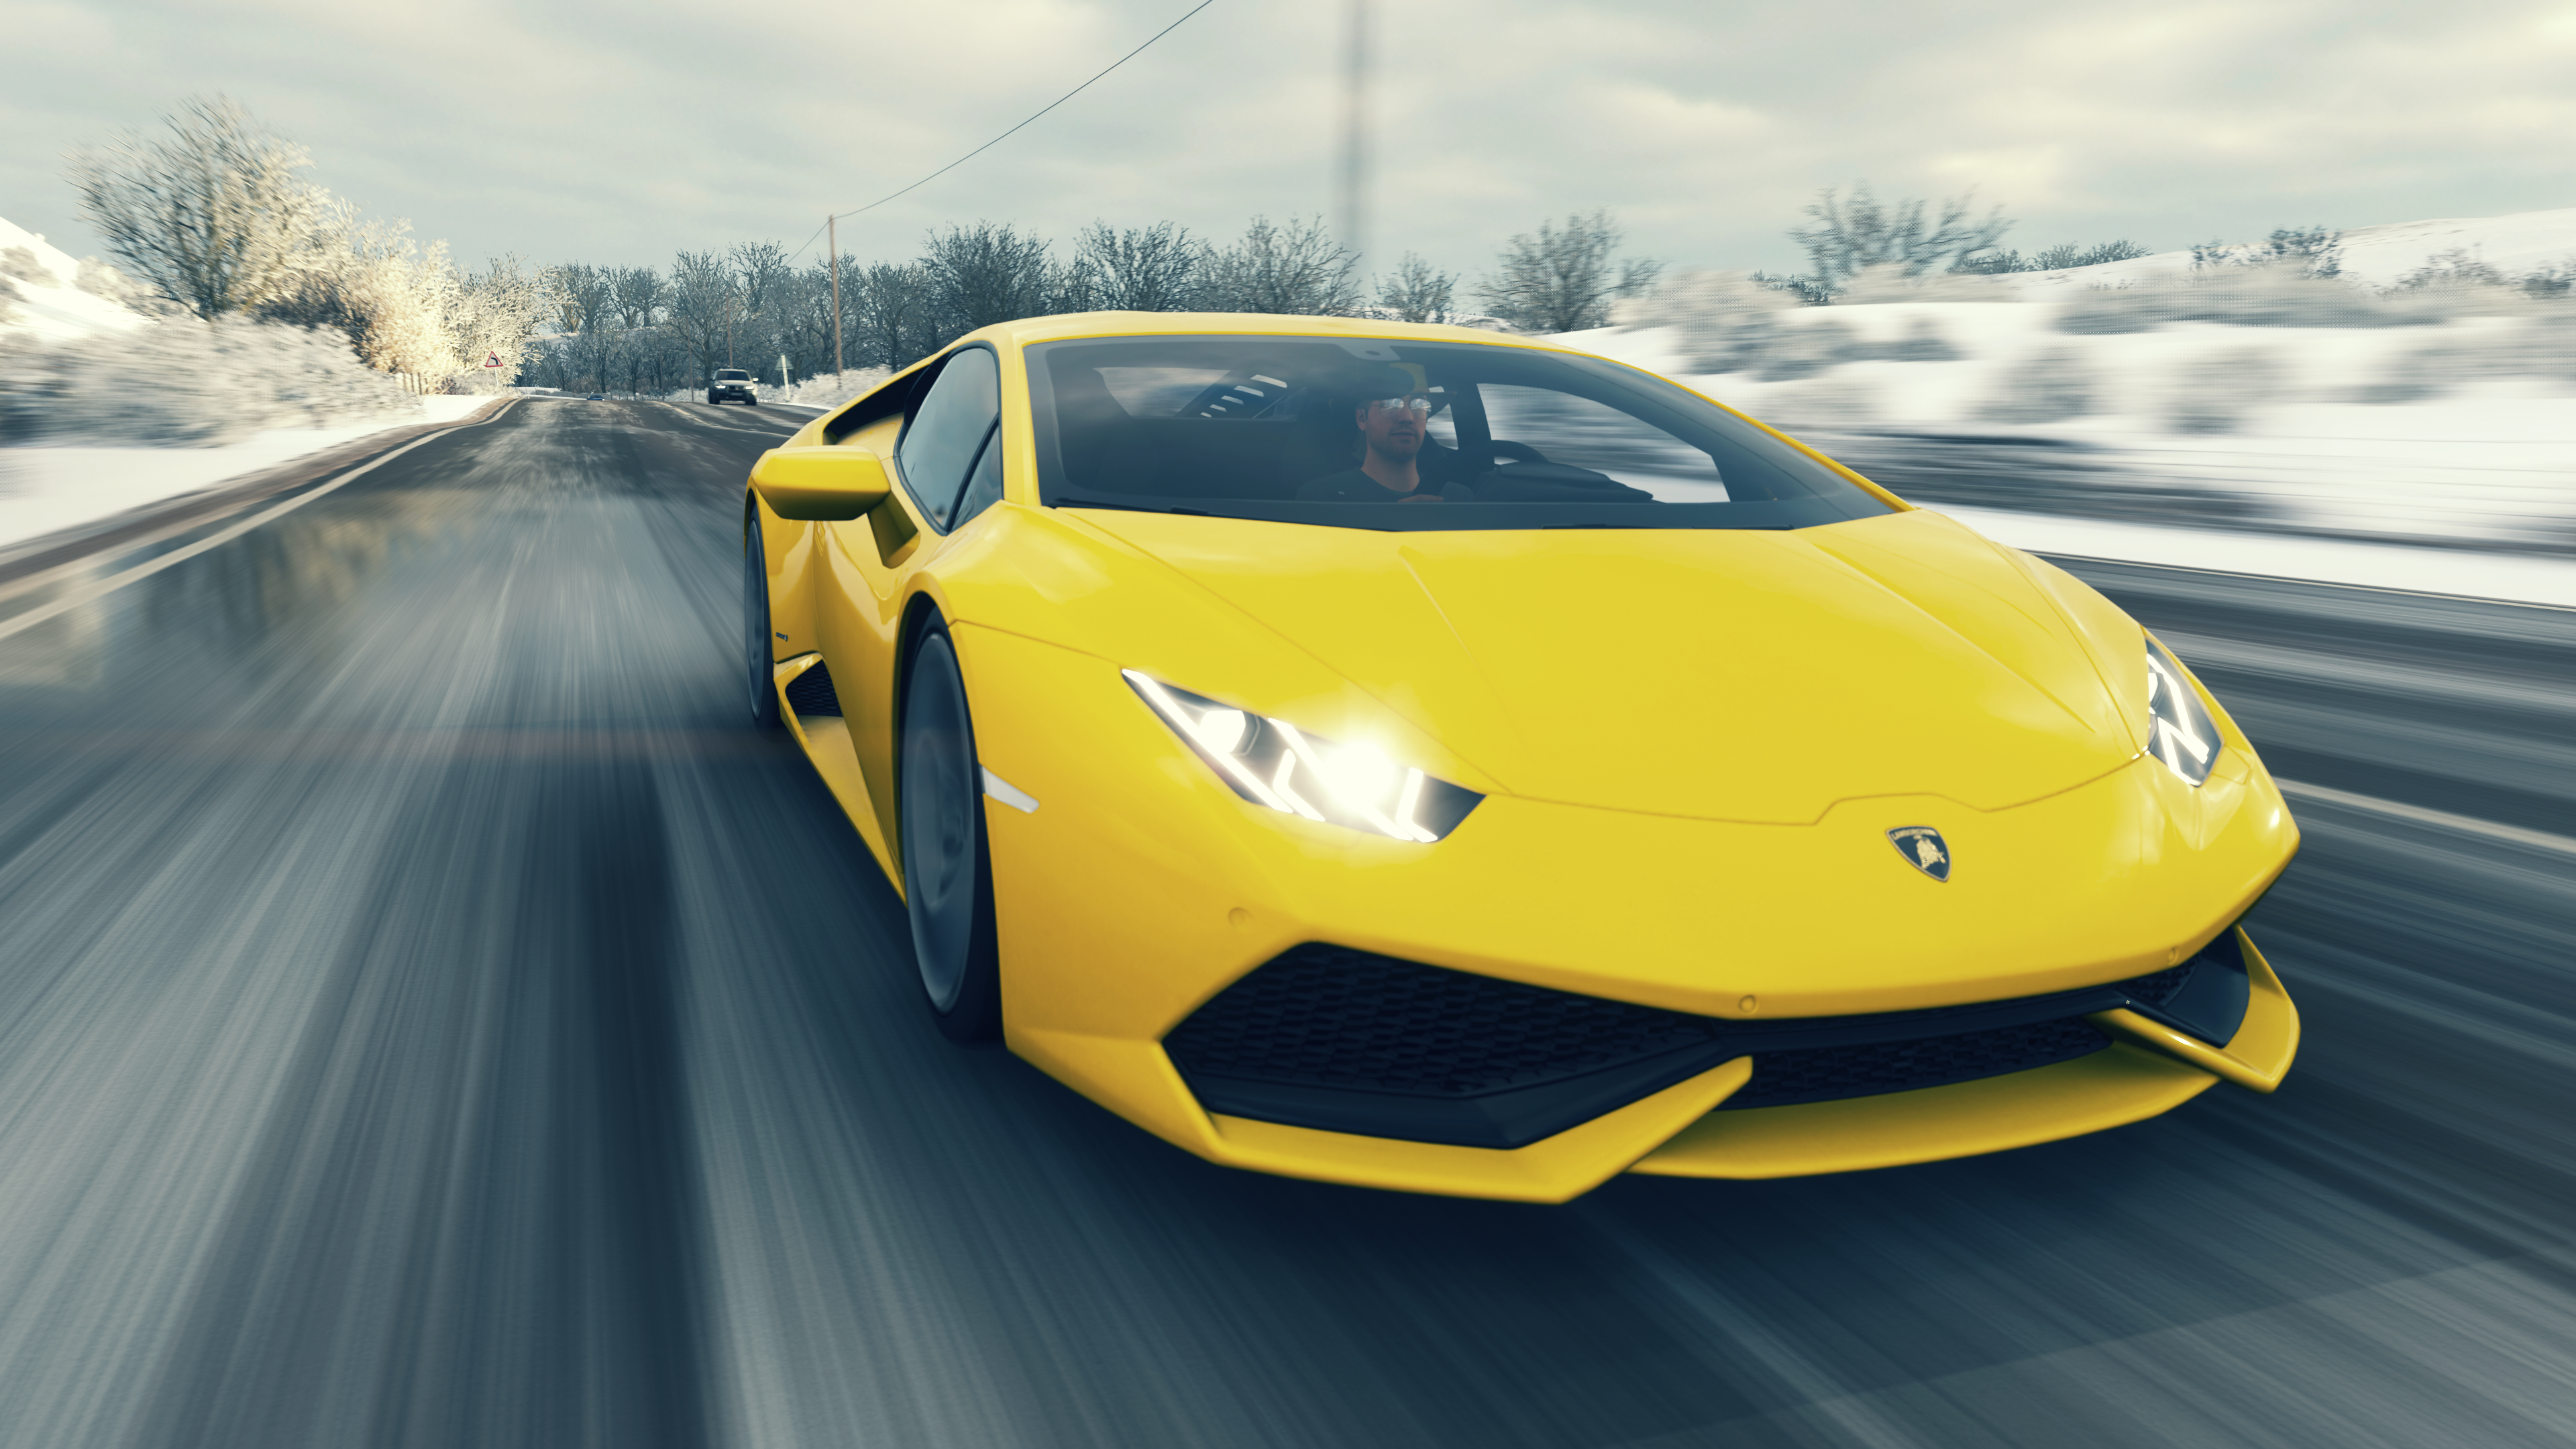 Forza Horizon 4 Spring 2014 Lamborghini Huracan LP 610 4 Yellow Cars Car Racing Lamborghini Video Ga 3840x2160